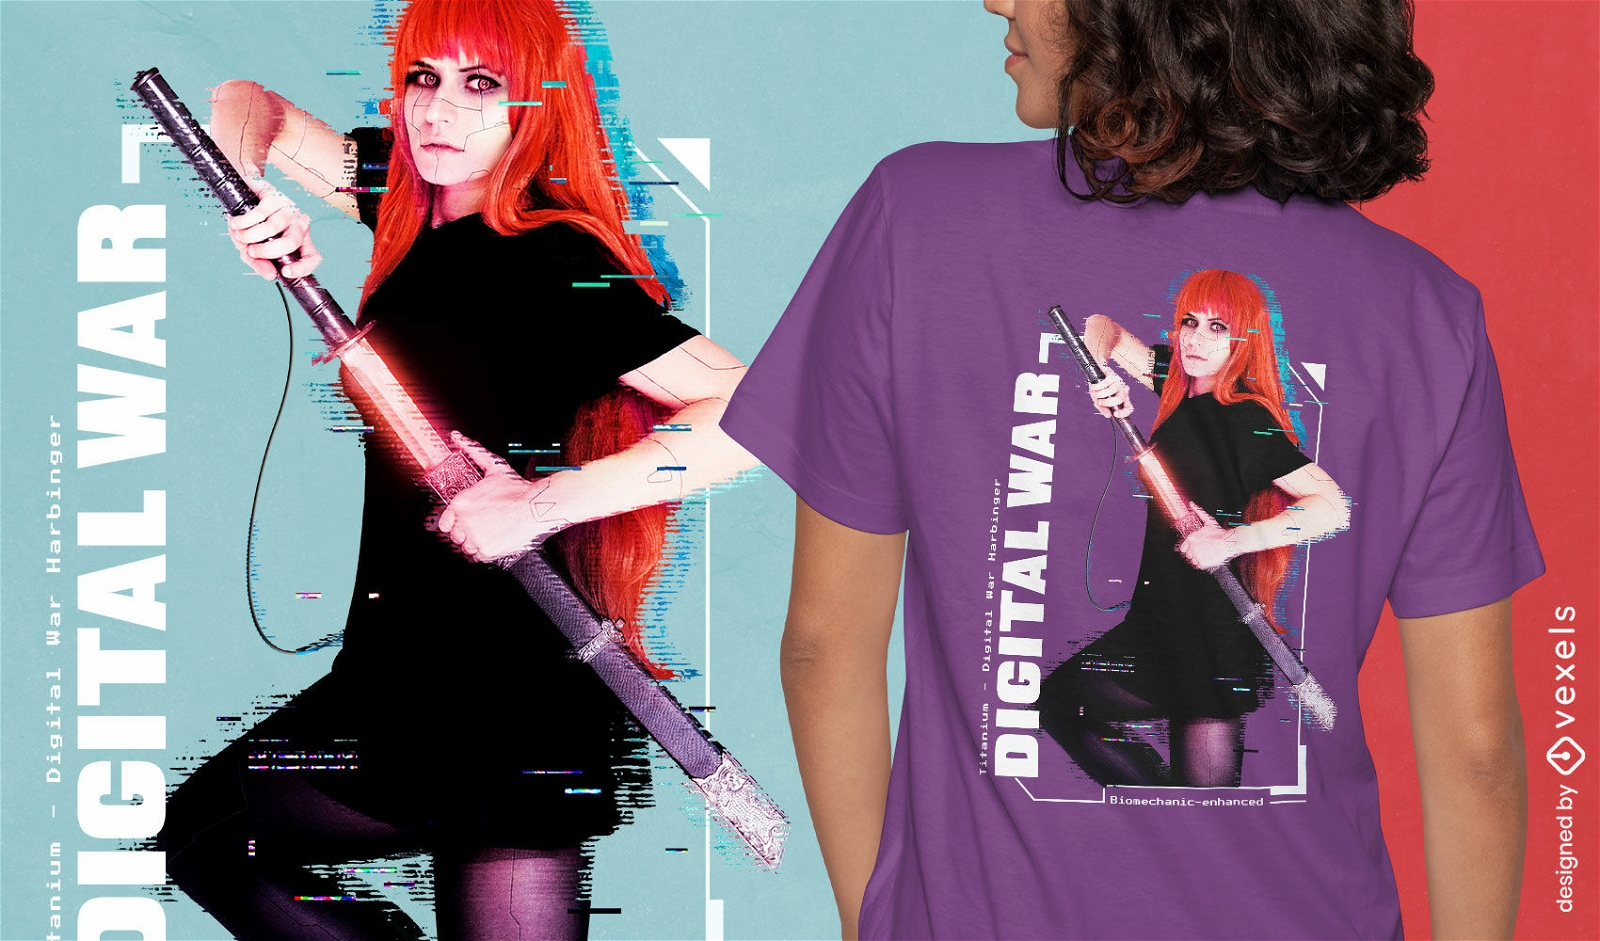 Diseño de camiseta de mujer guerrera digital.